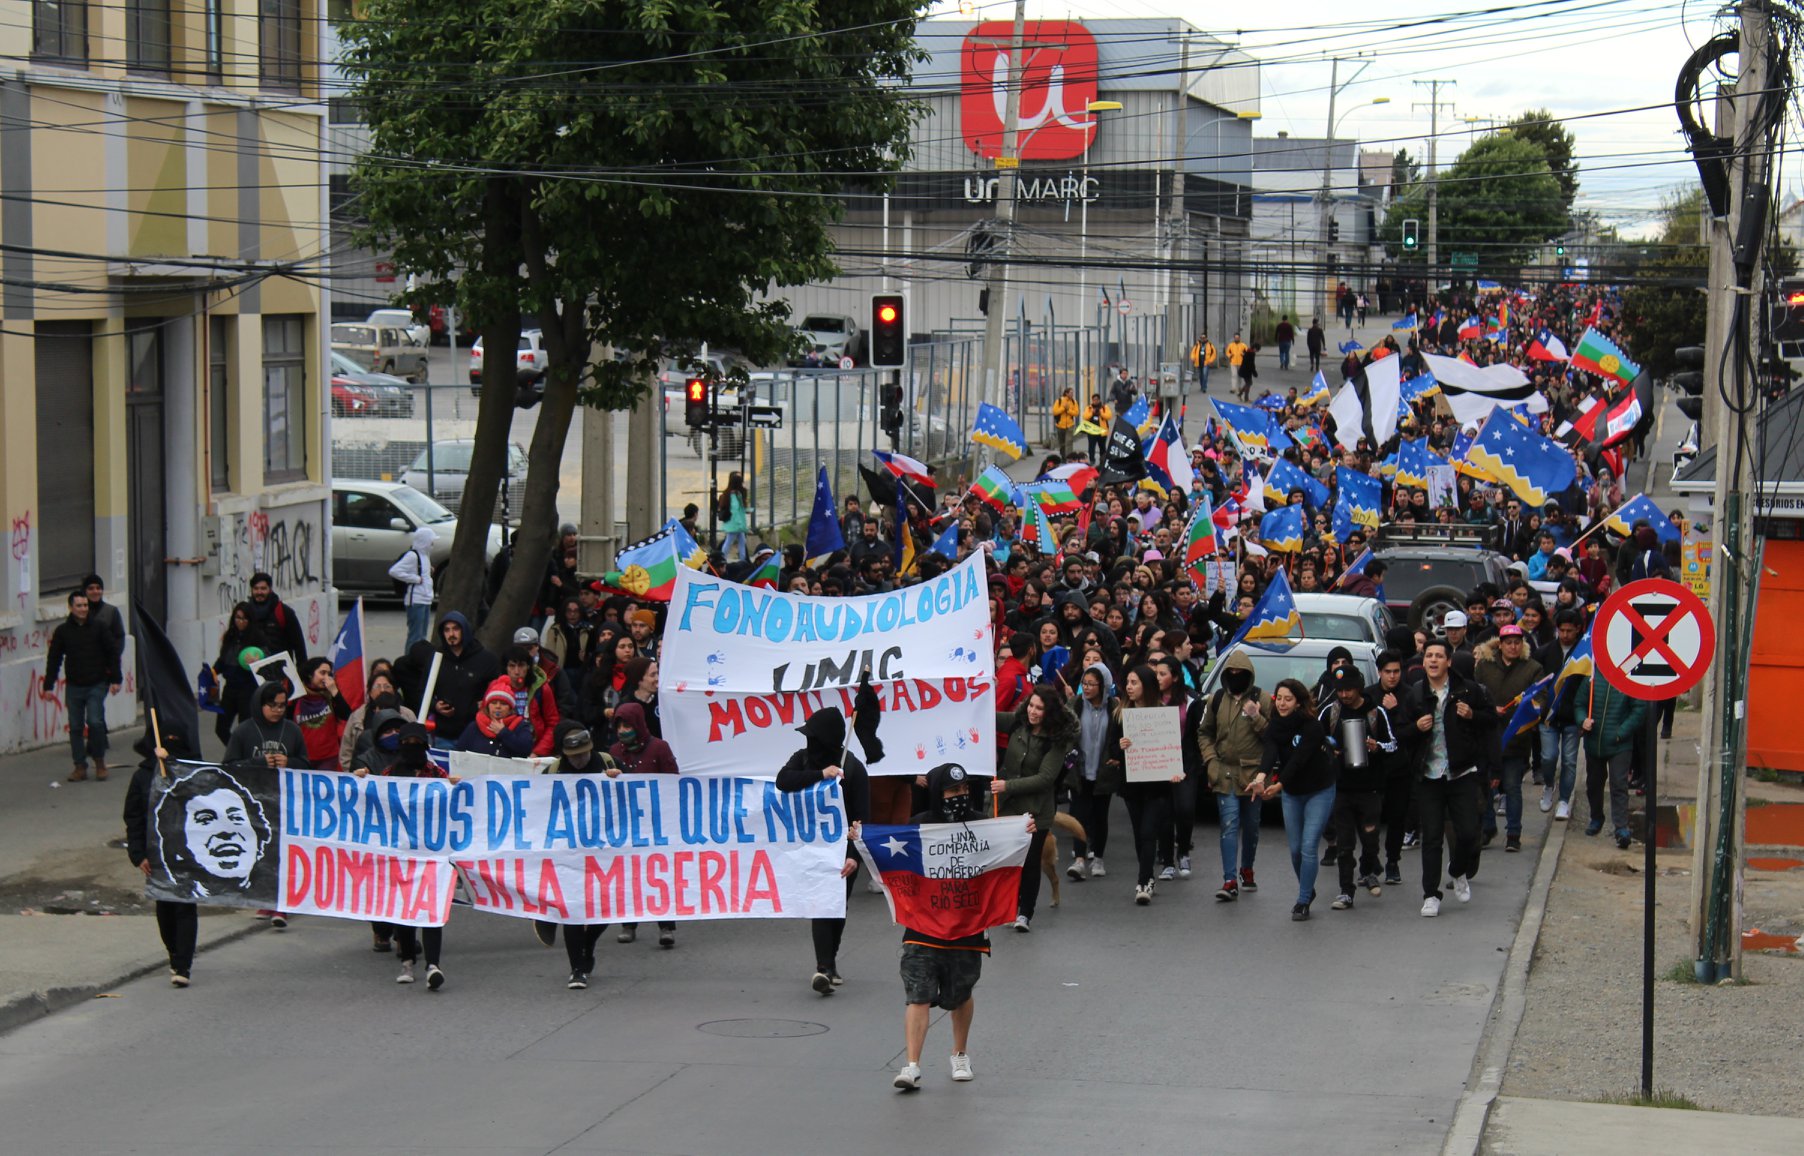 Unas 3.000 personas marcharon esta tarde por el centro de Punta Arenas